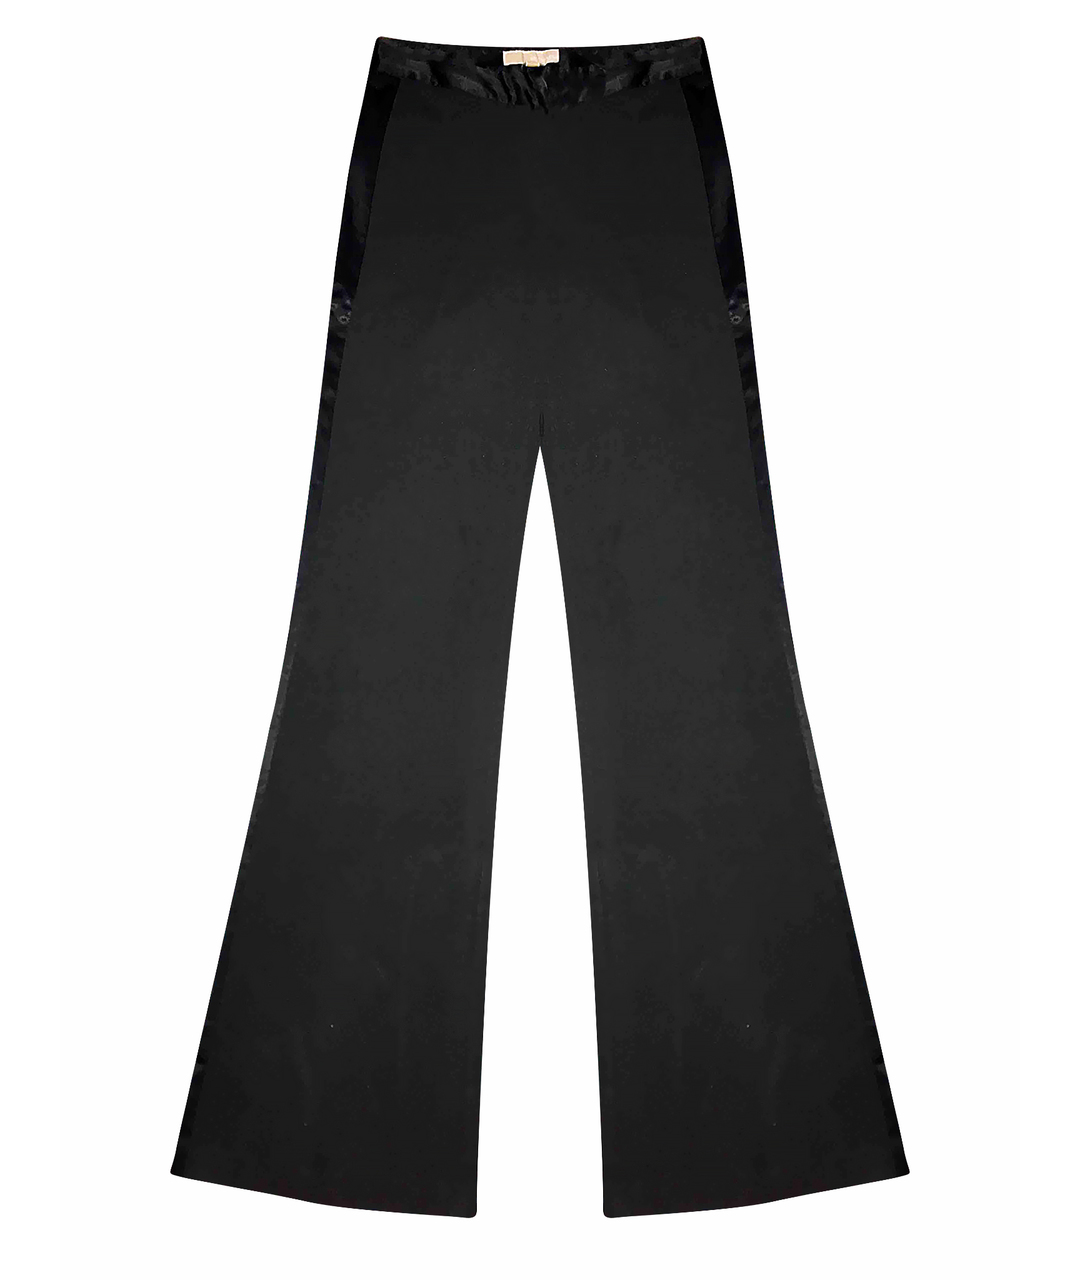 MICHAEL KORS Черные полиэстеровые брюки широкие, фото 1